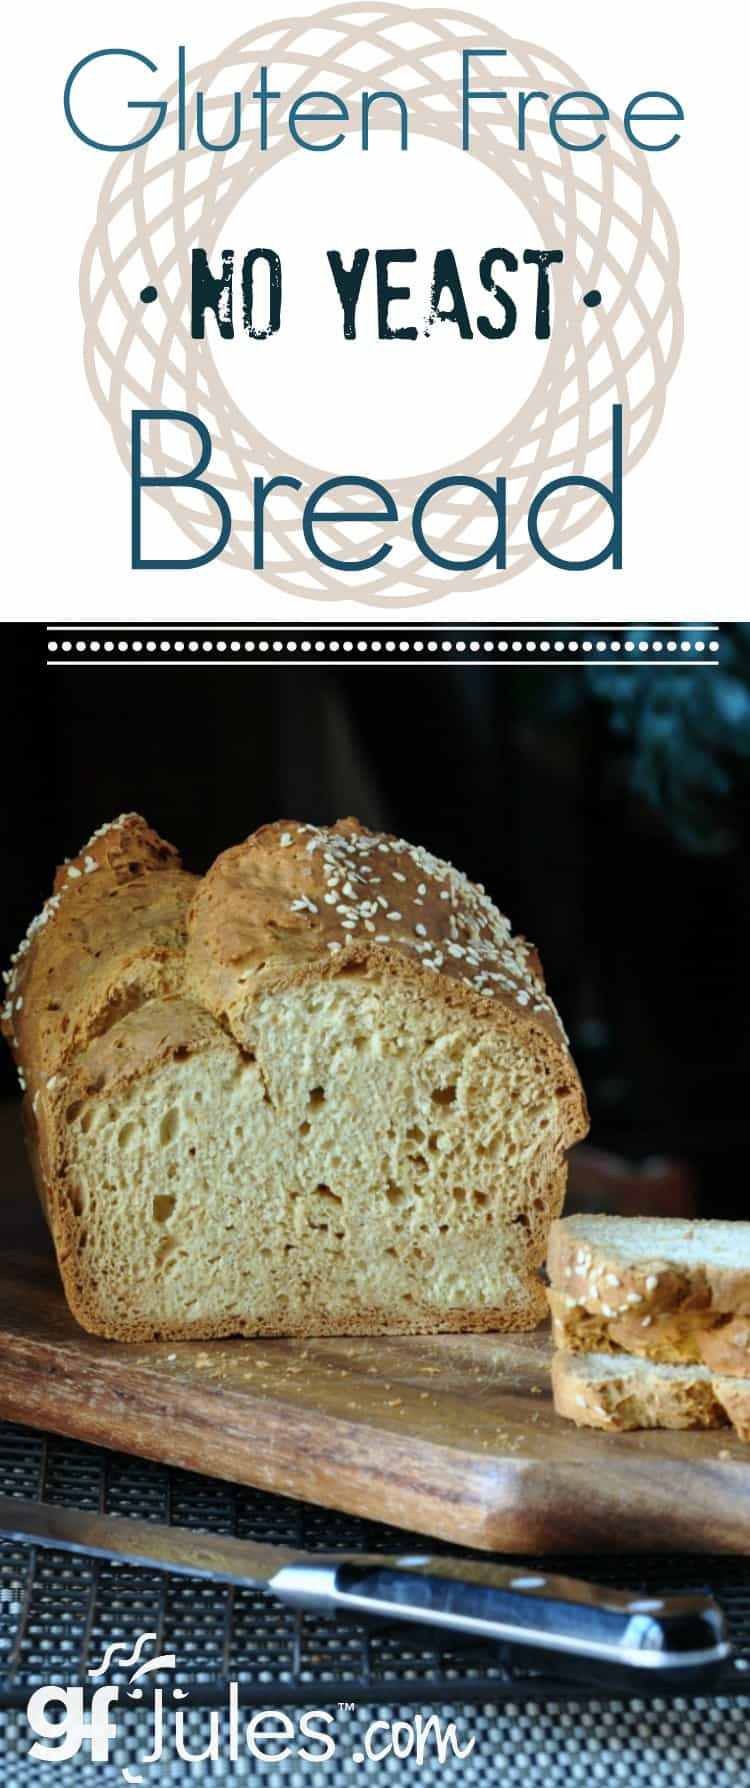 Gluten Free Bread Maker Recipes
 Gluten Free No Yeast Bread Recipe for Sandwiches gfJules